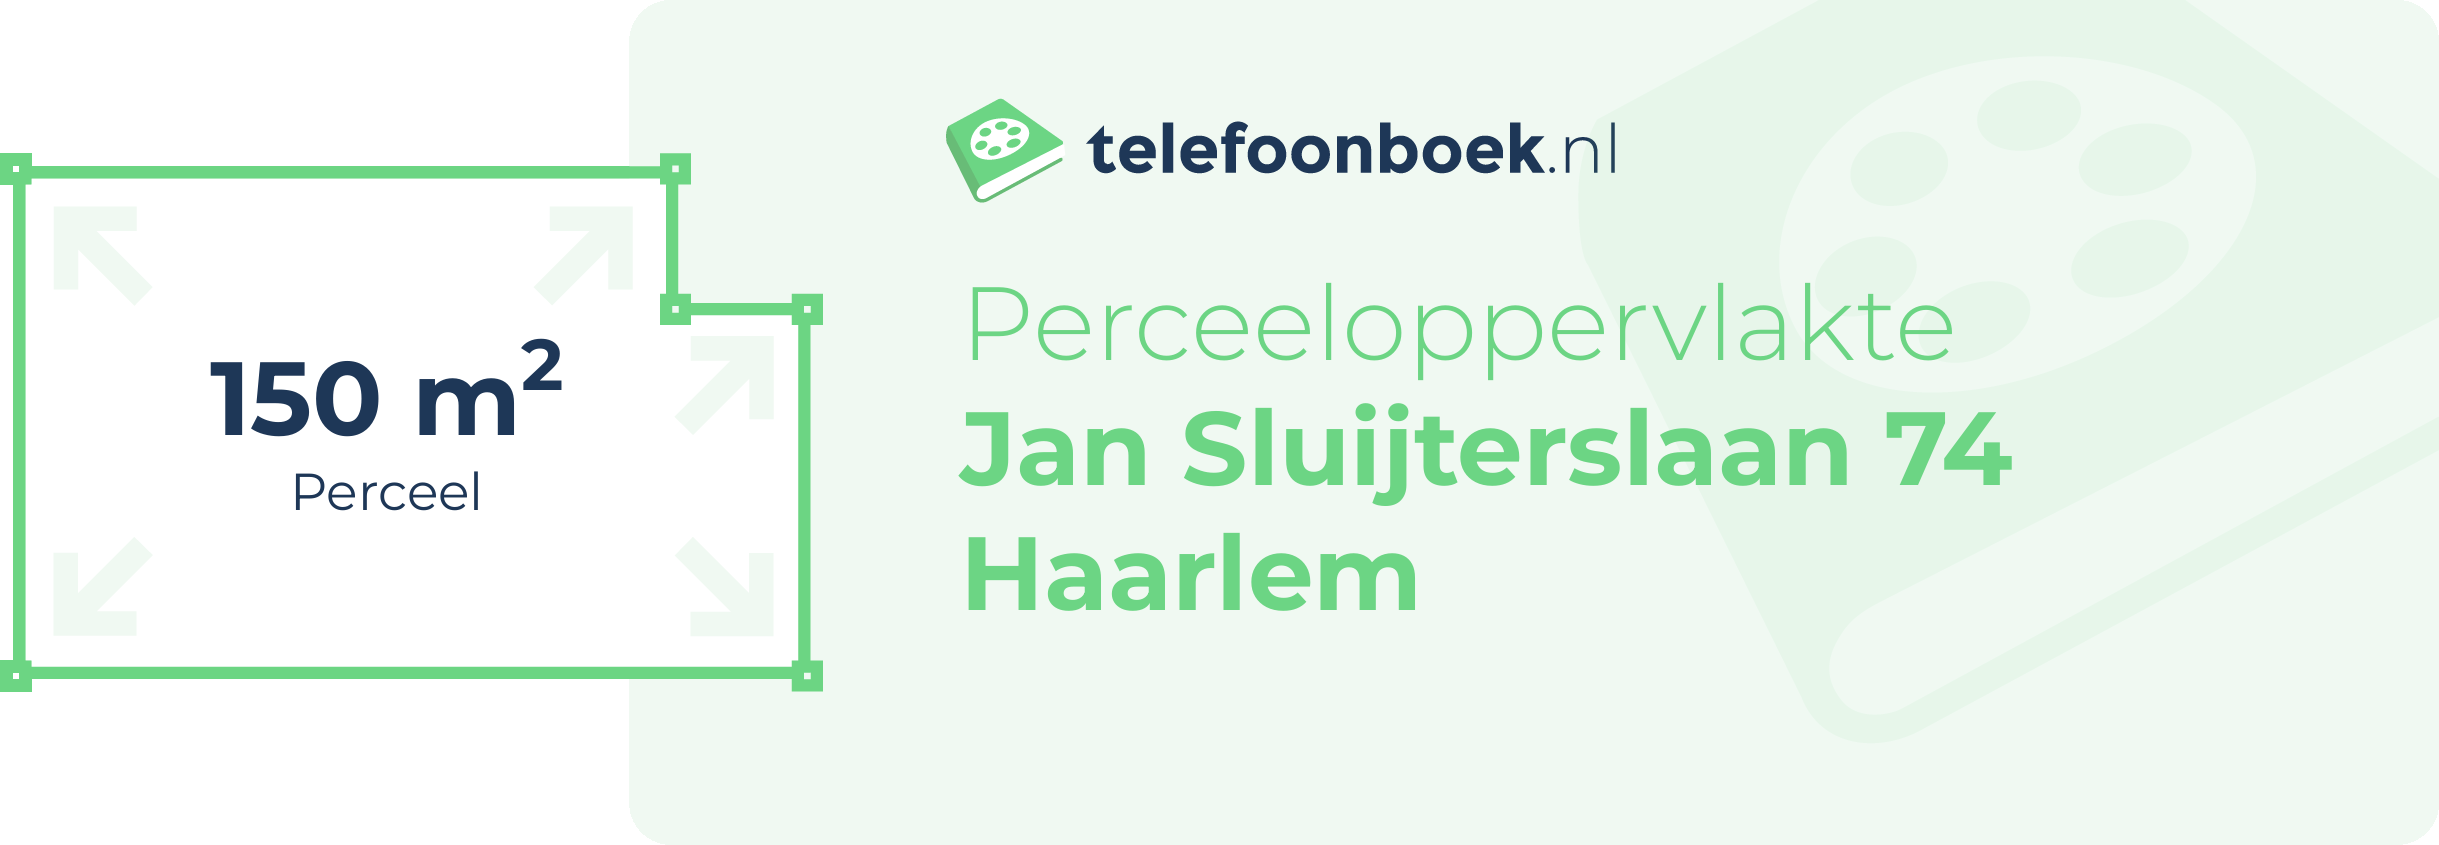 Perceeloppervlakte Jan Sluijterslaan 74 Haarlem